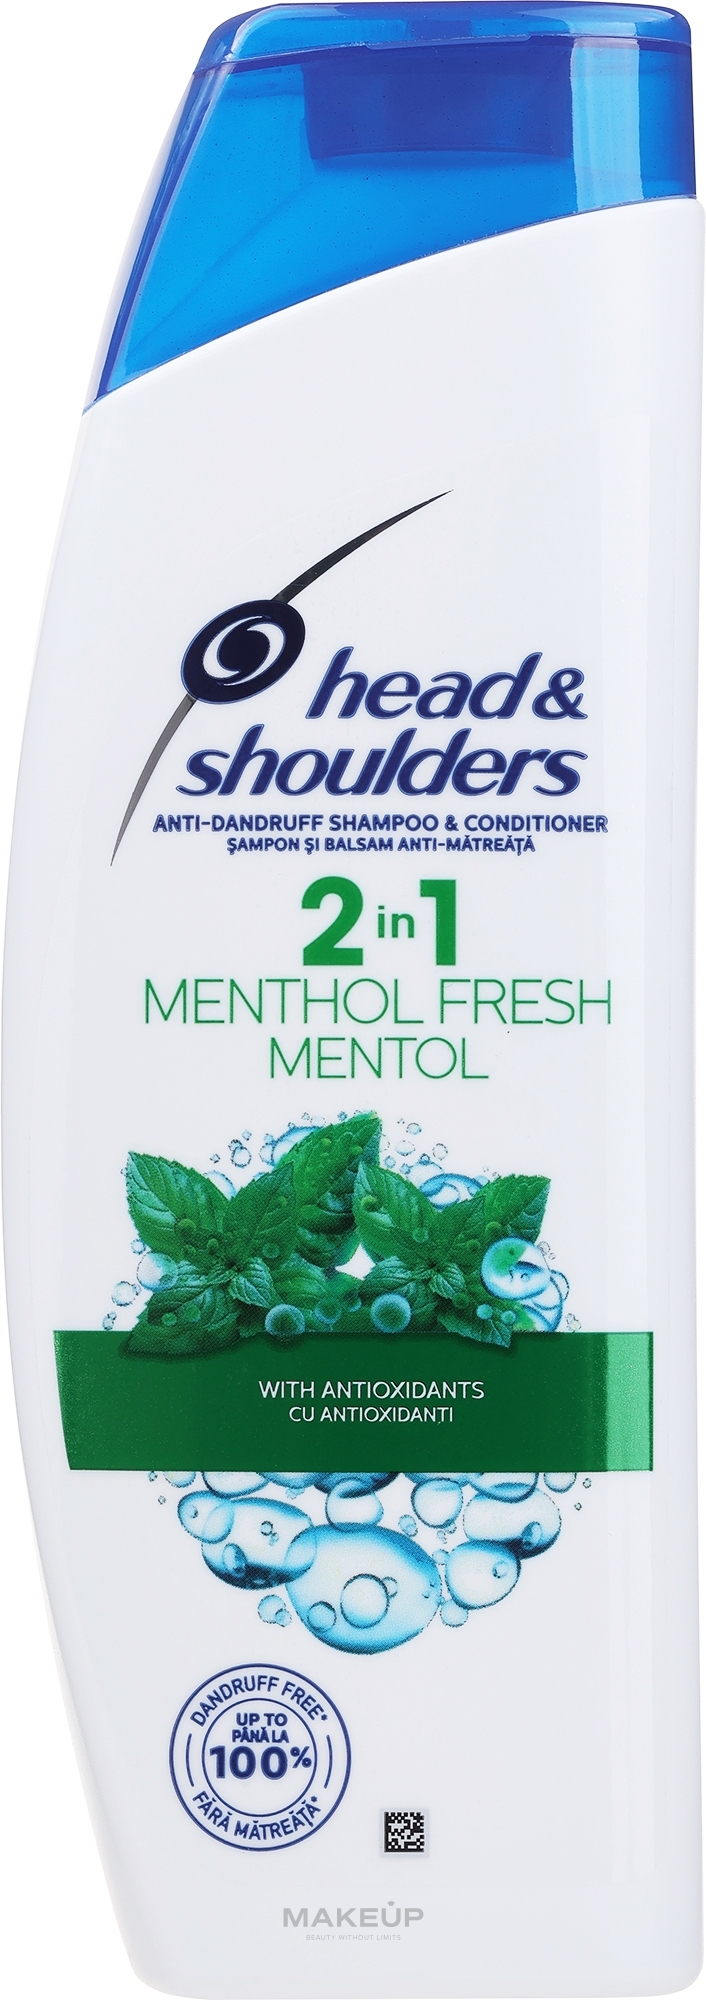 Rewitalizujący szampon do włosów z organiczną oliwą z oliwek - Head & Shoulders Anti-dandruff menthol fresh 2in1 Shampoo — Zdjęcie 360 ml